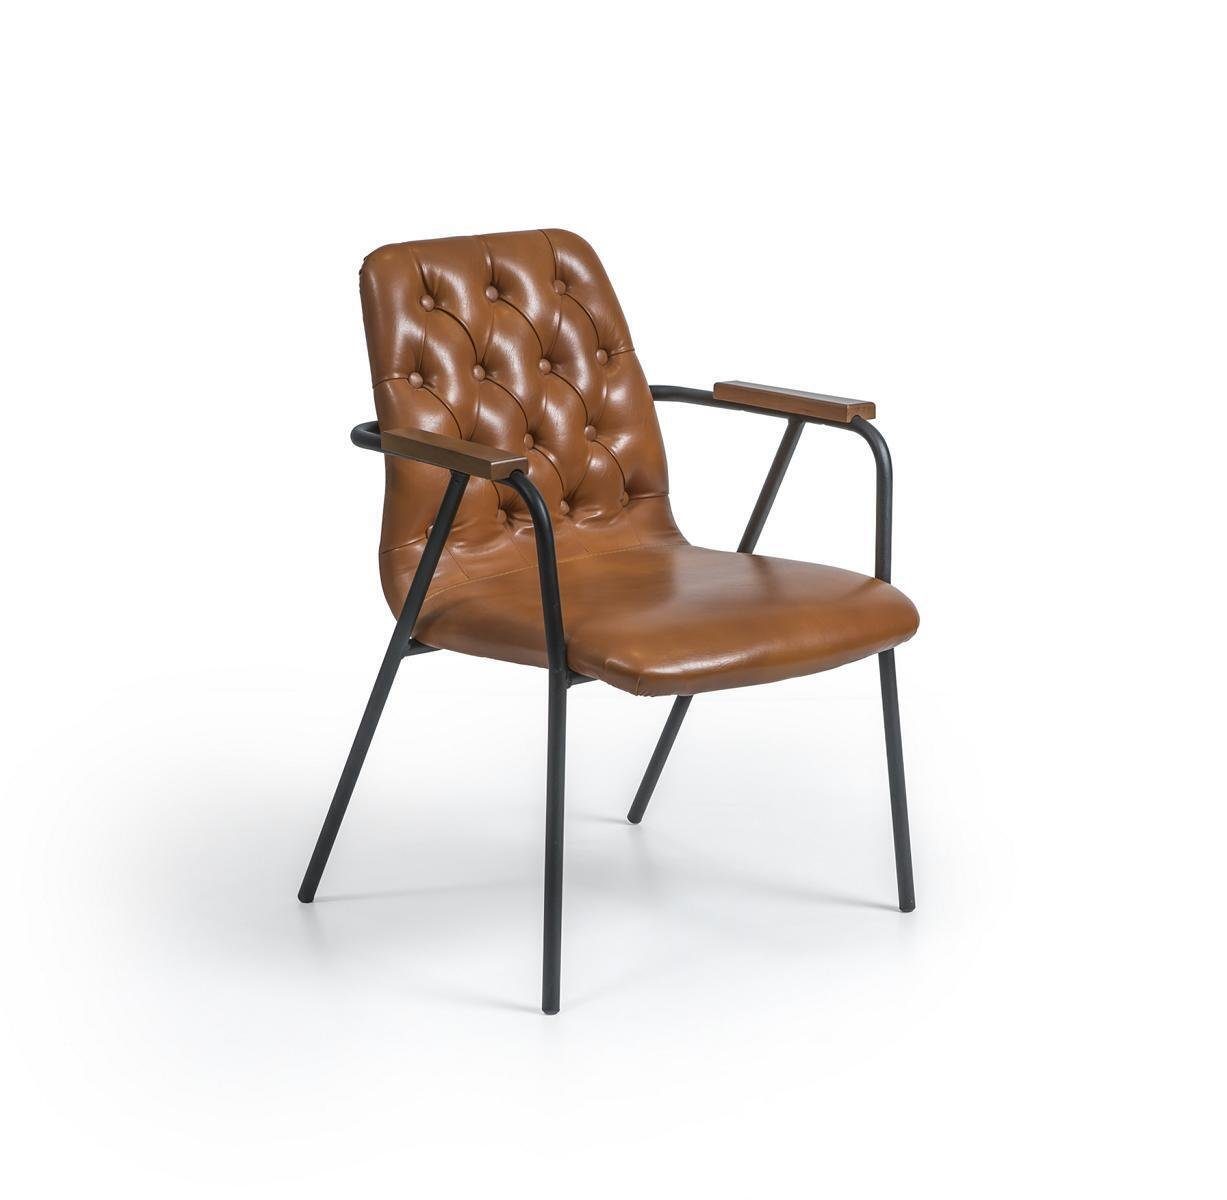 Braun Luxus Möbel Europa JVmoebel in Neu, Armlehnen mit Designer Esszimmerstuhl Made Armlehnstuhl Stuhl